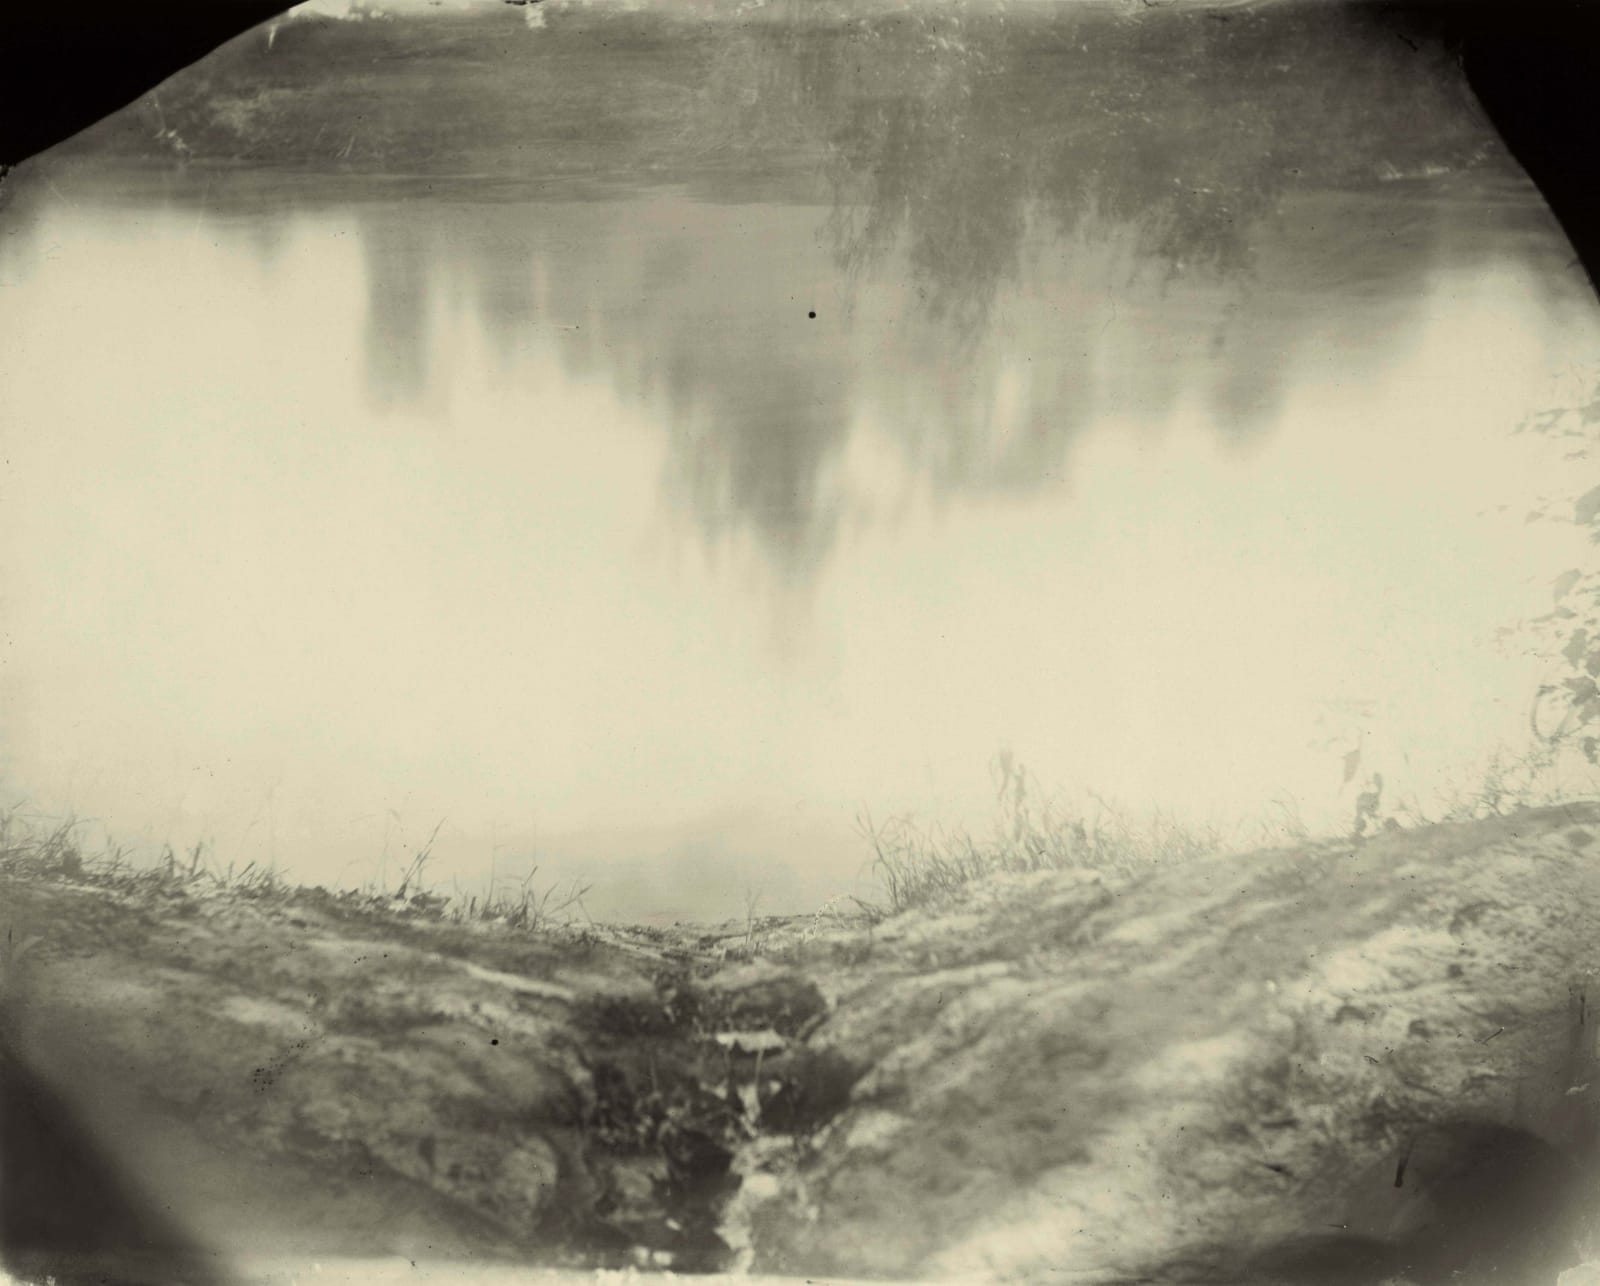 Sally Mann Deep South series, Untitled Emmett Till River Bank, photograph of riverbank where Emmett Till's body was recovered